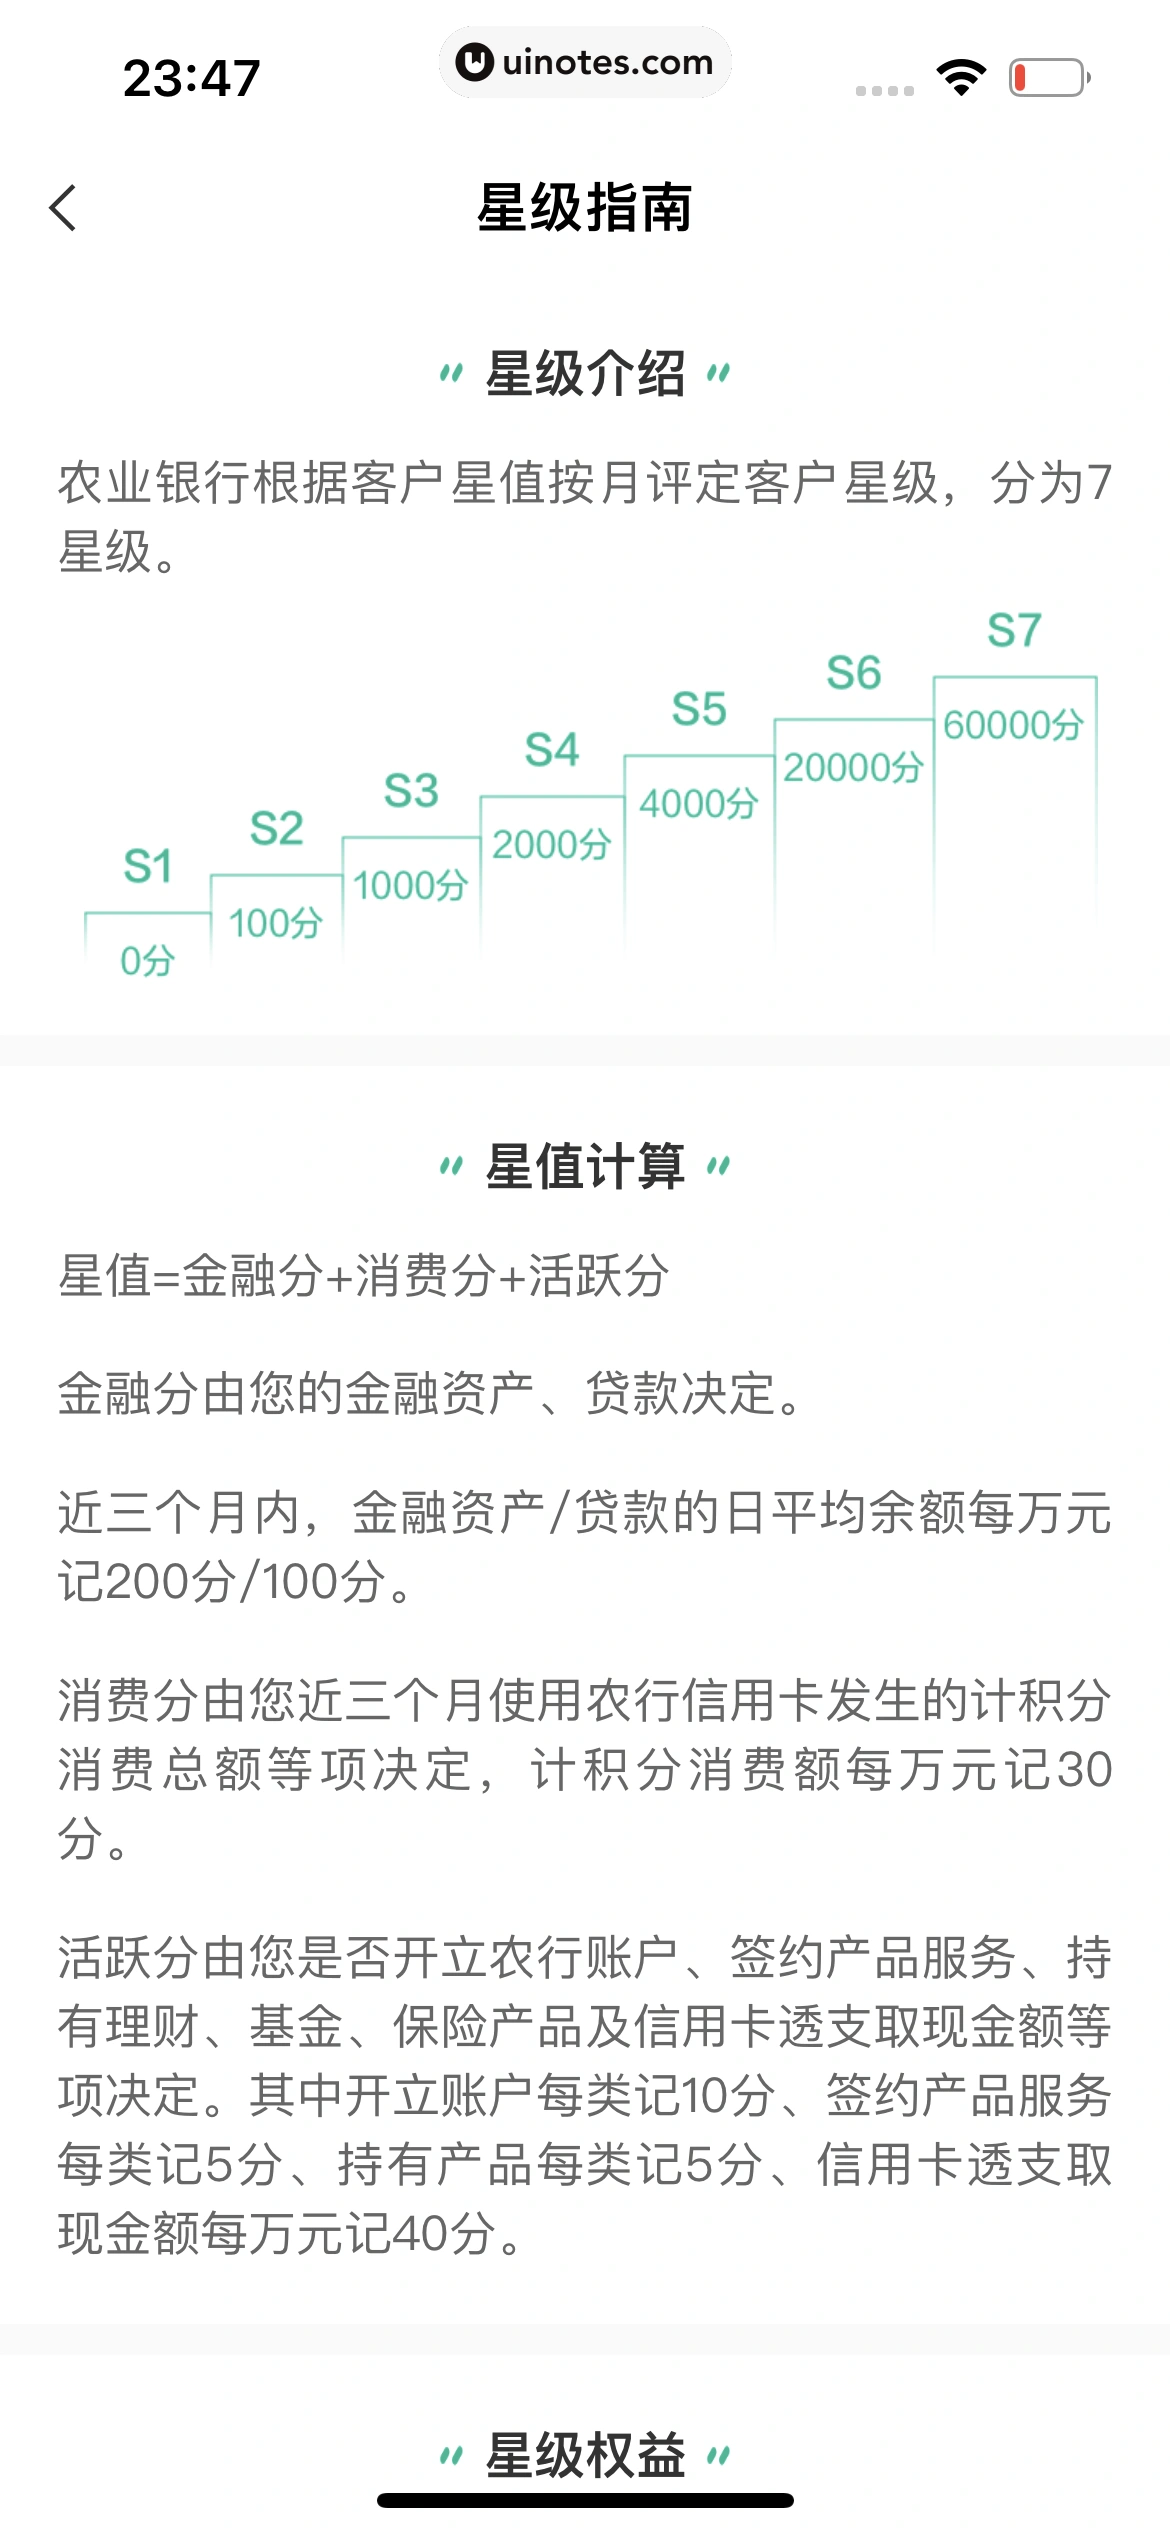 中国农业银行 App 截图 169 - UI Notes